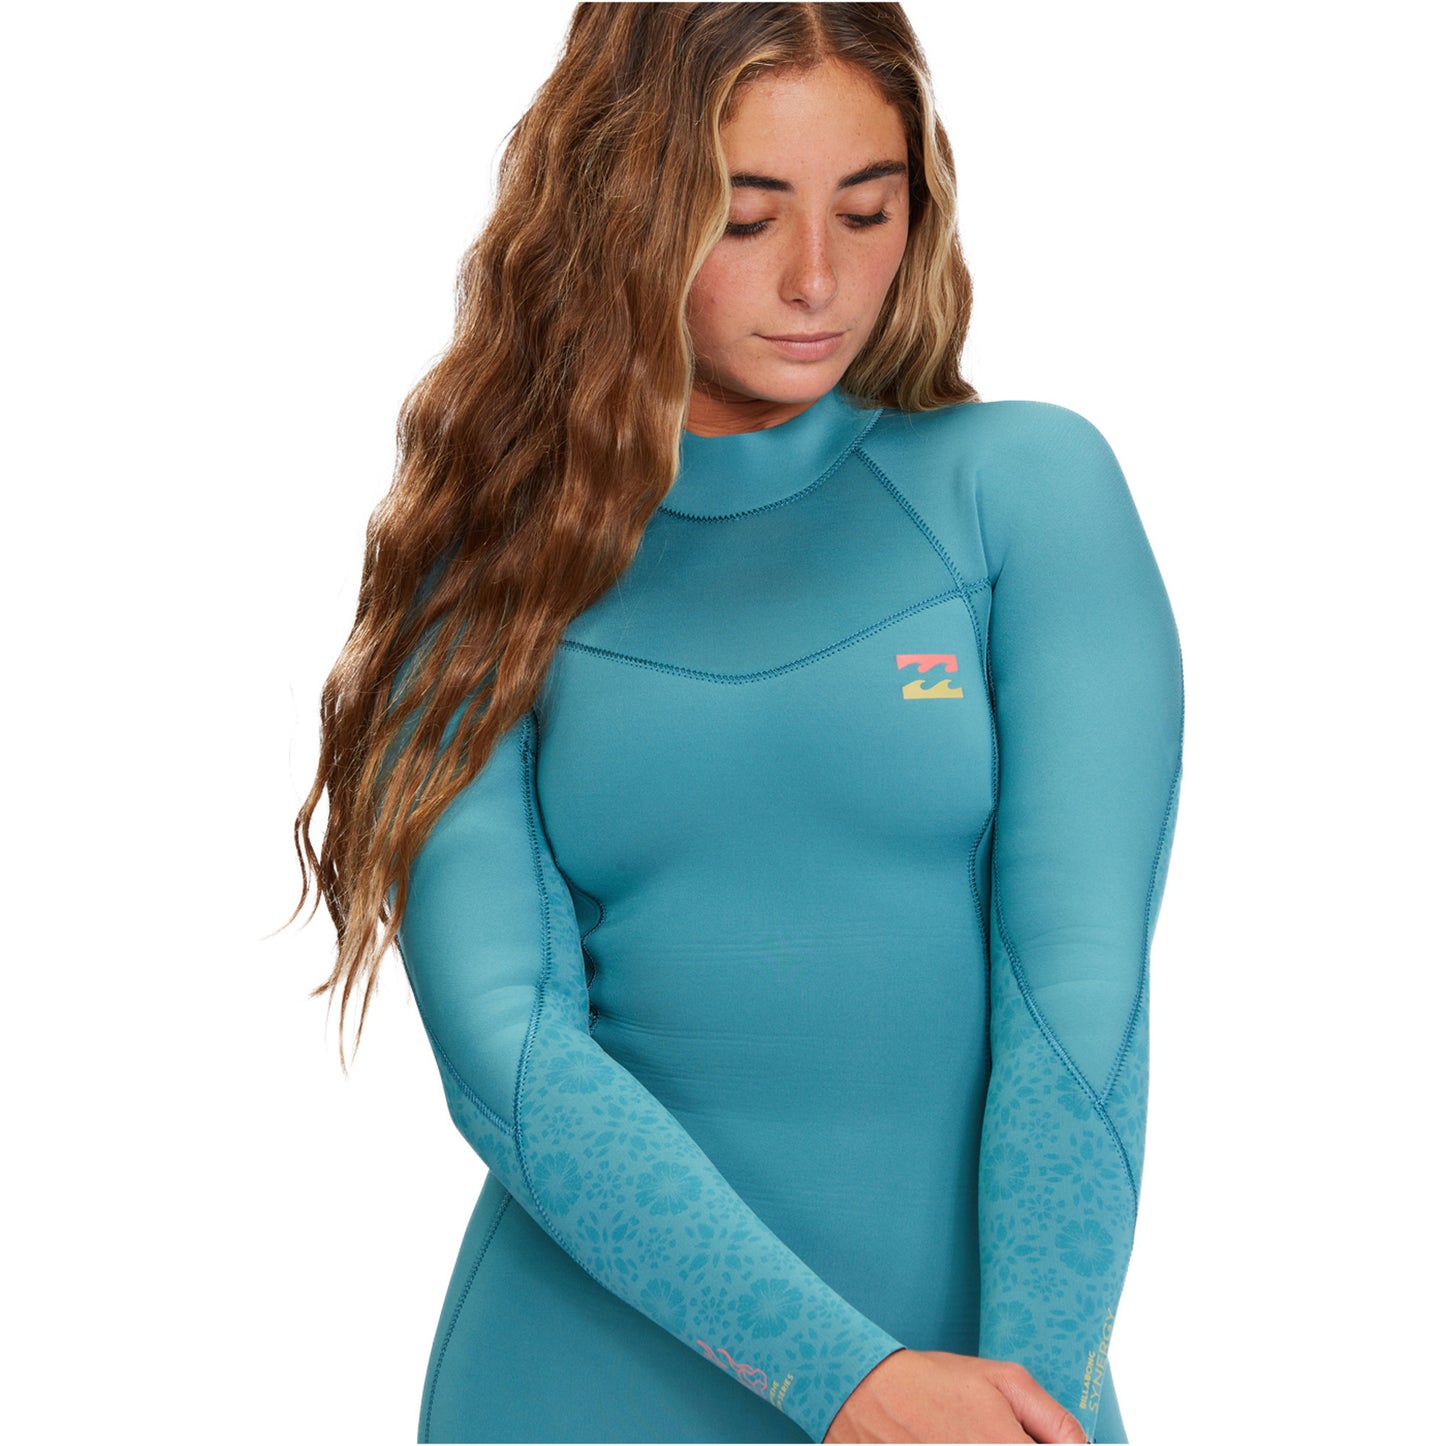 Billabong Synergy 5:4 Chest Zip Furnace Lining Women Winter Wetsuit - Marine